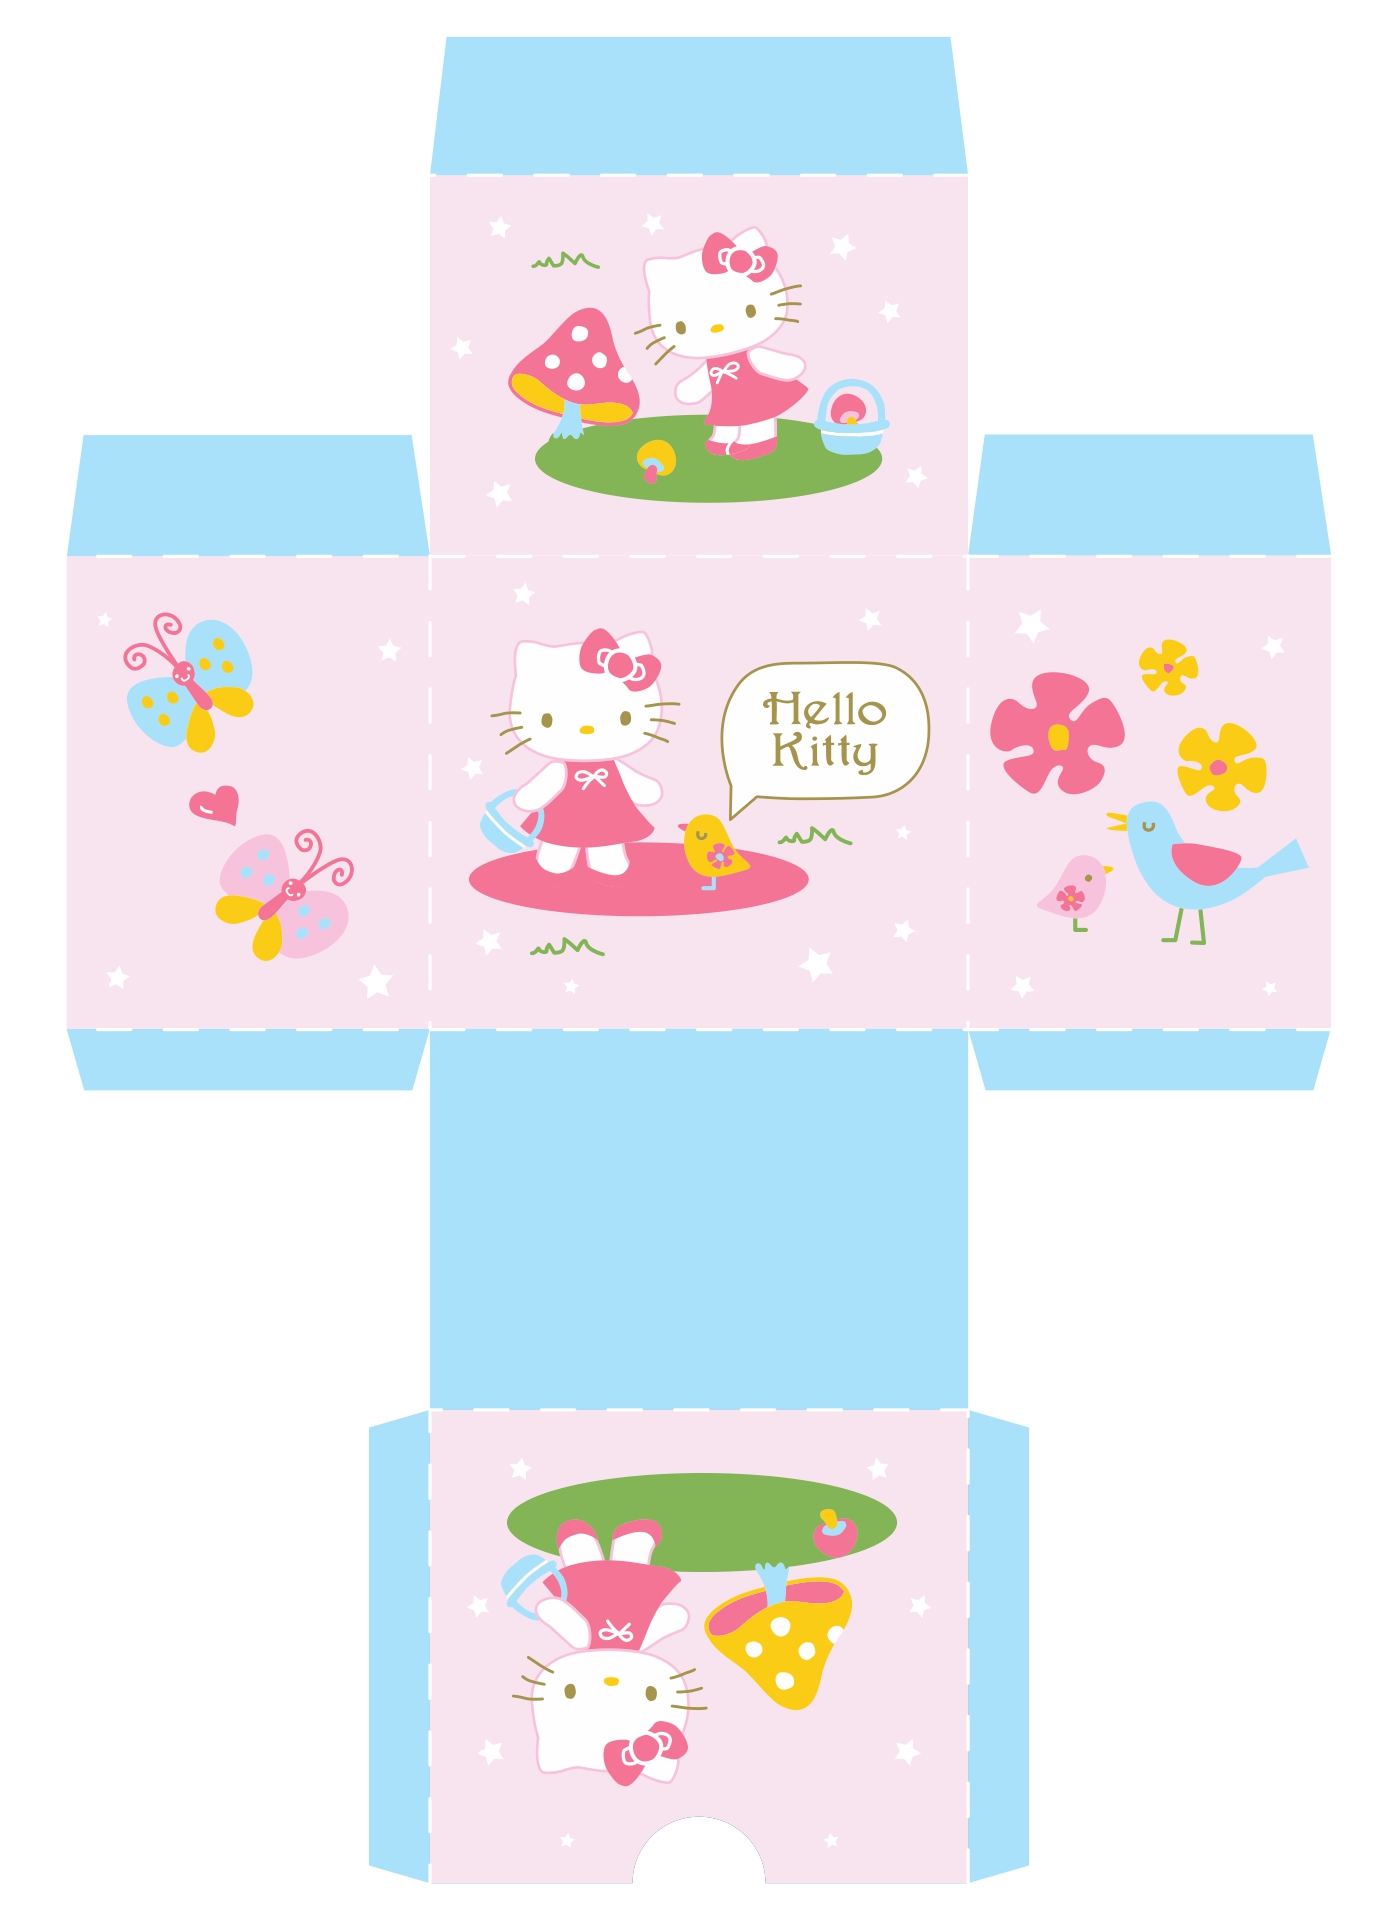 Hello Kitty Printable Boxes